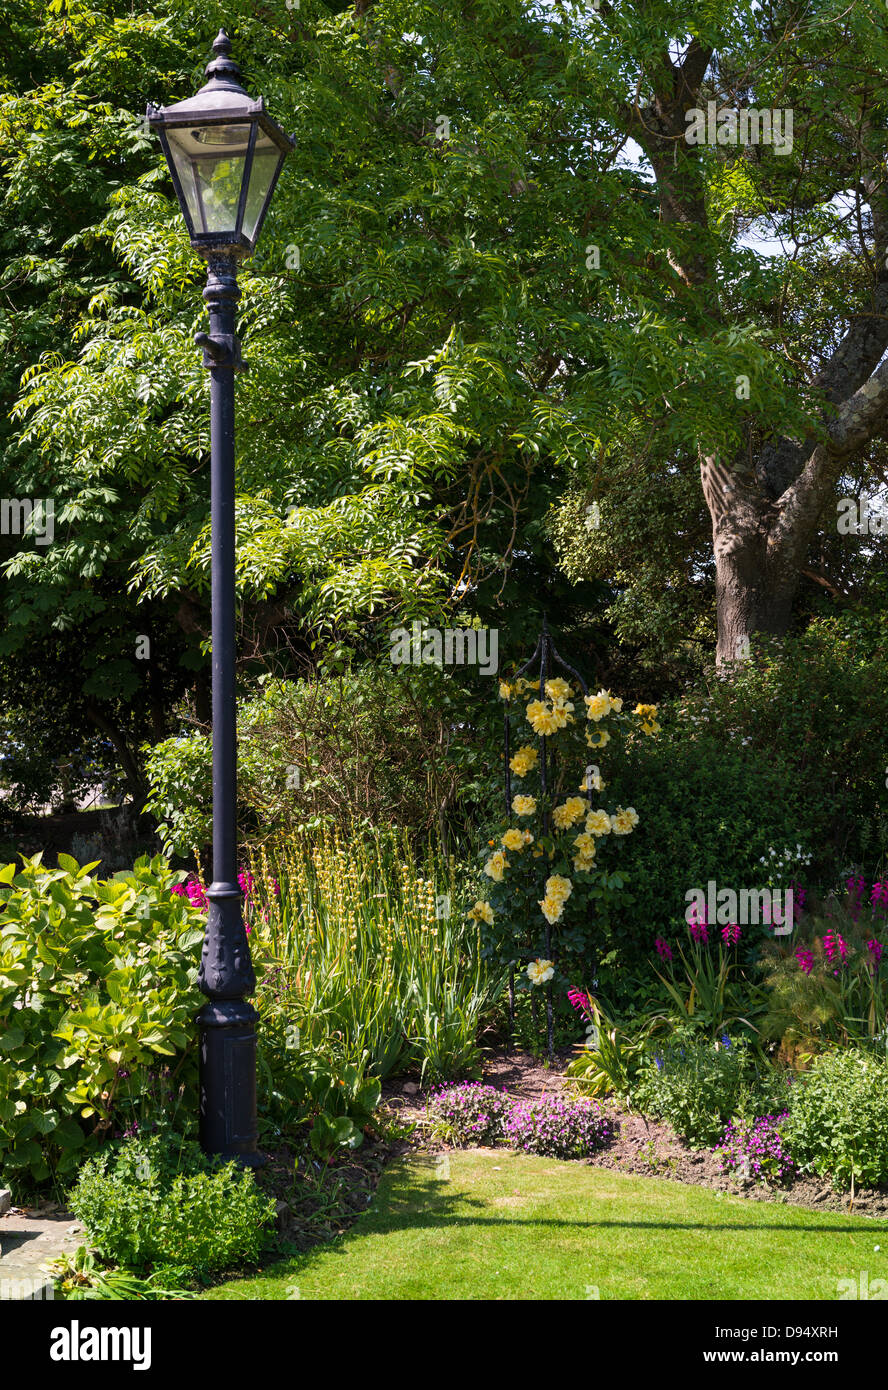 Sidmouth, Devon, England. Connaught Gärten. Viktorianischen Straßenlampen in einer Ecke des Gartens mit einem Rosenbusch. Stockfoto